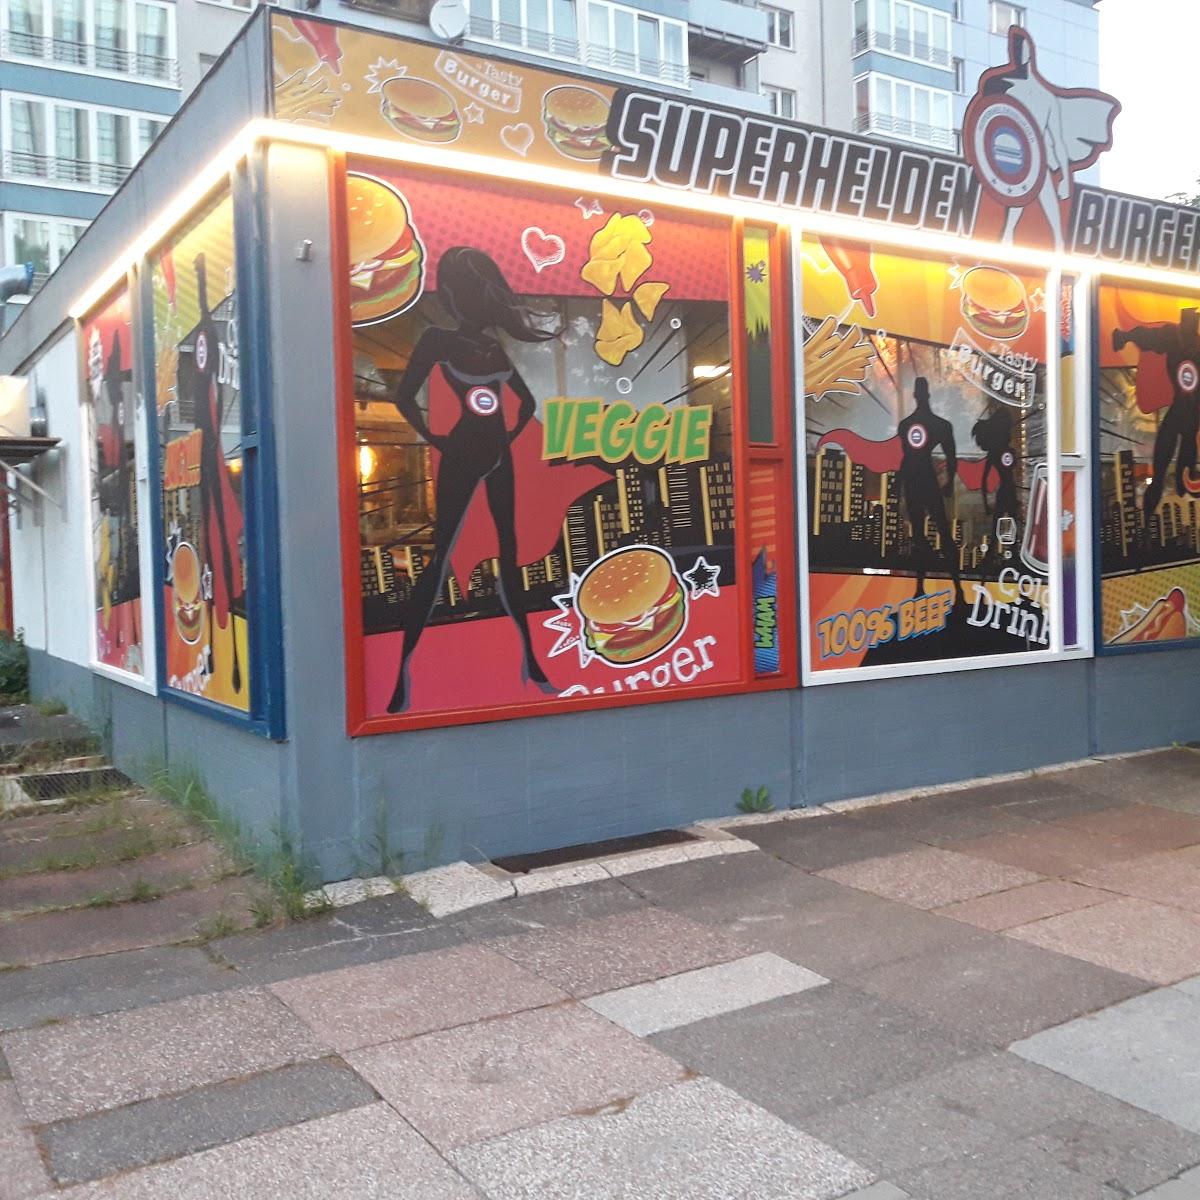 Restaurant "Superhelden Burger" in Chemnitz